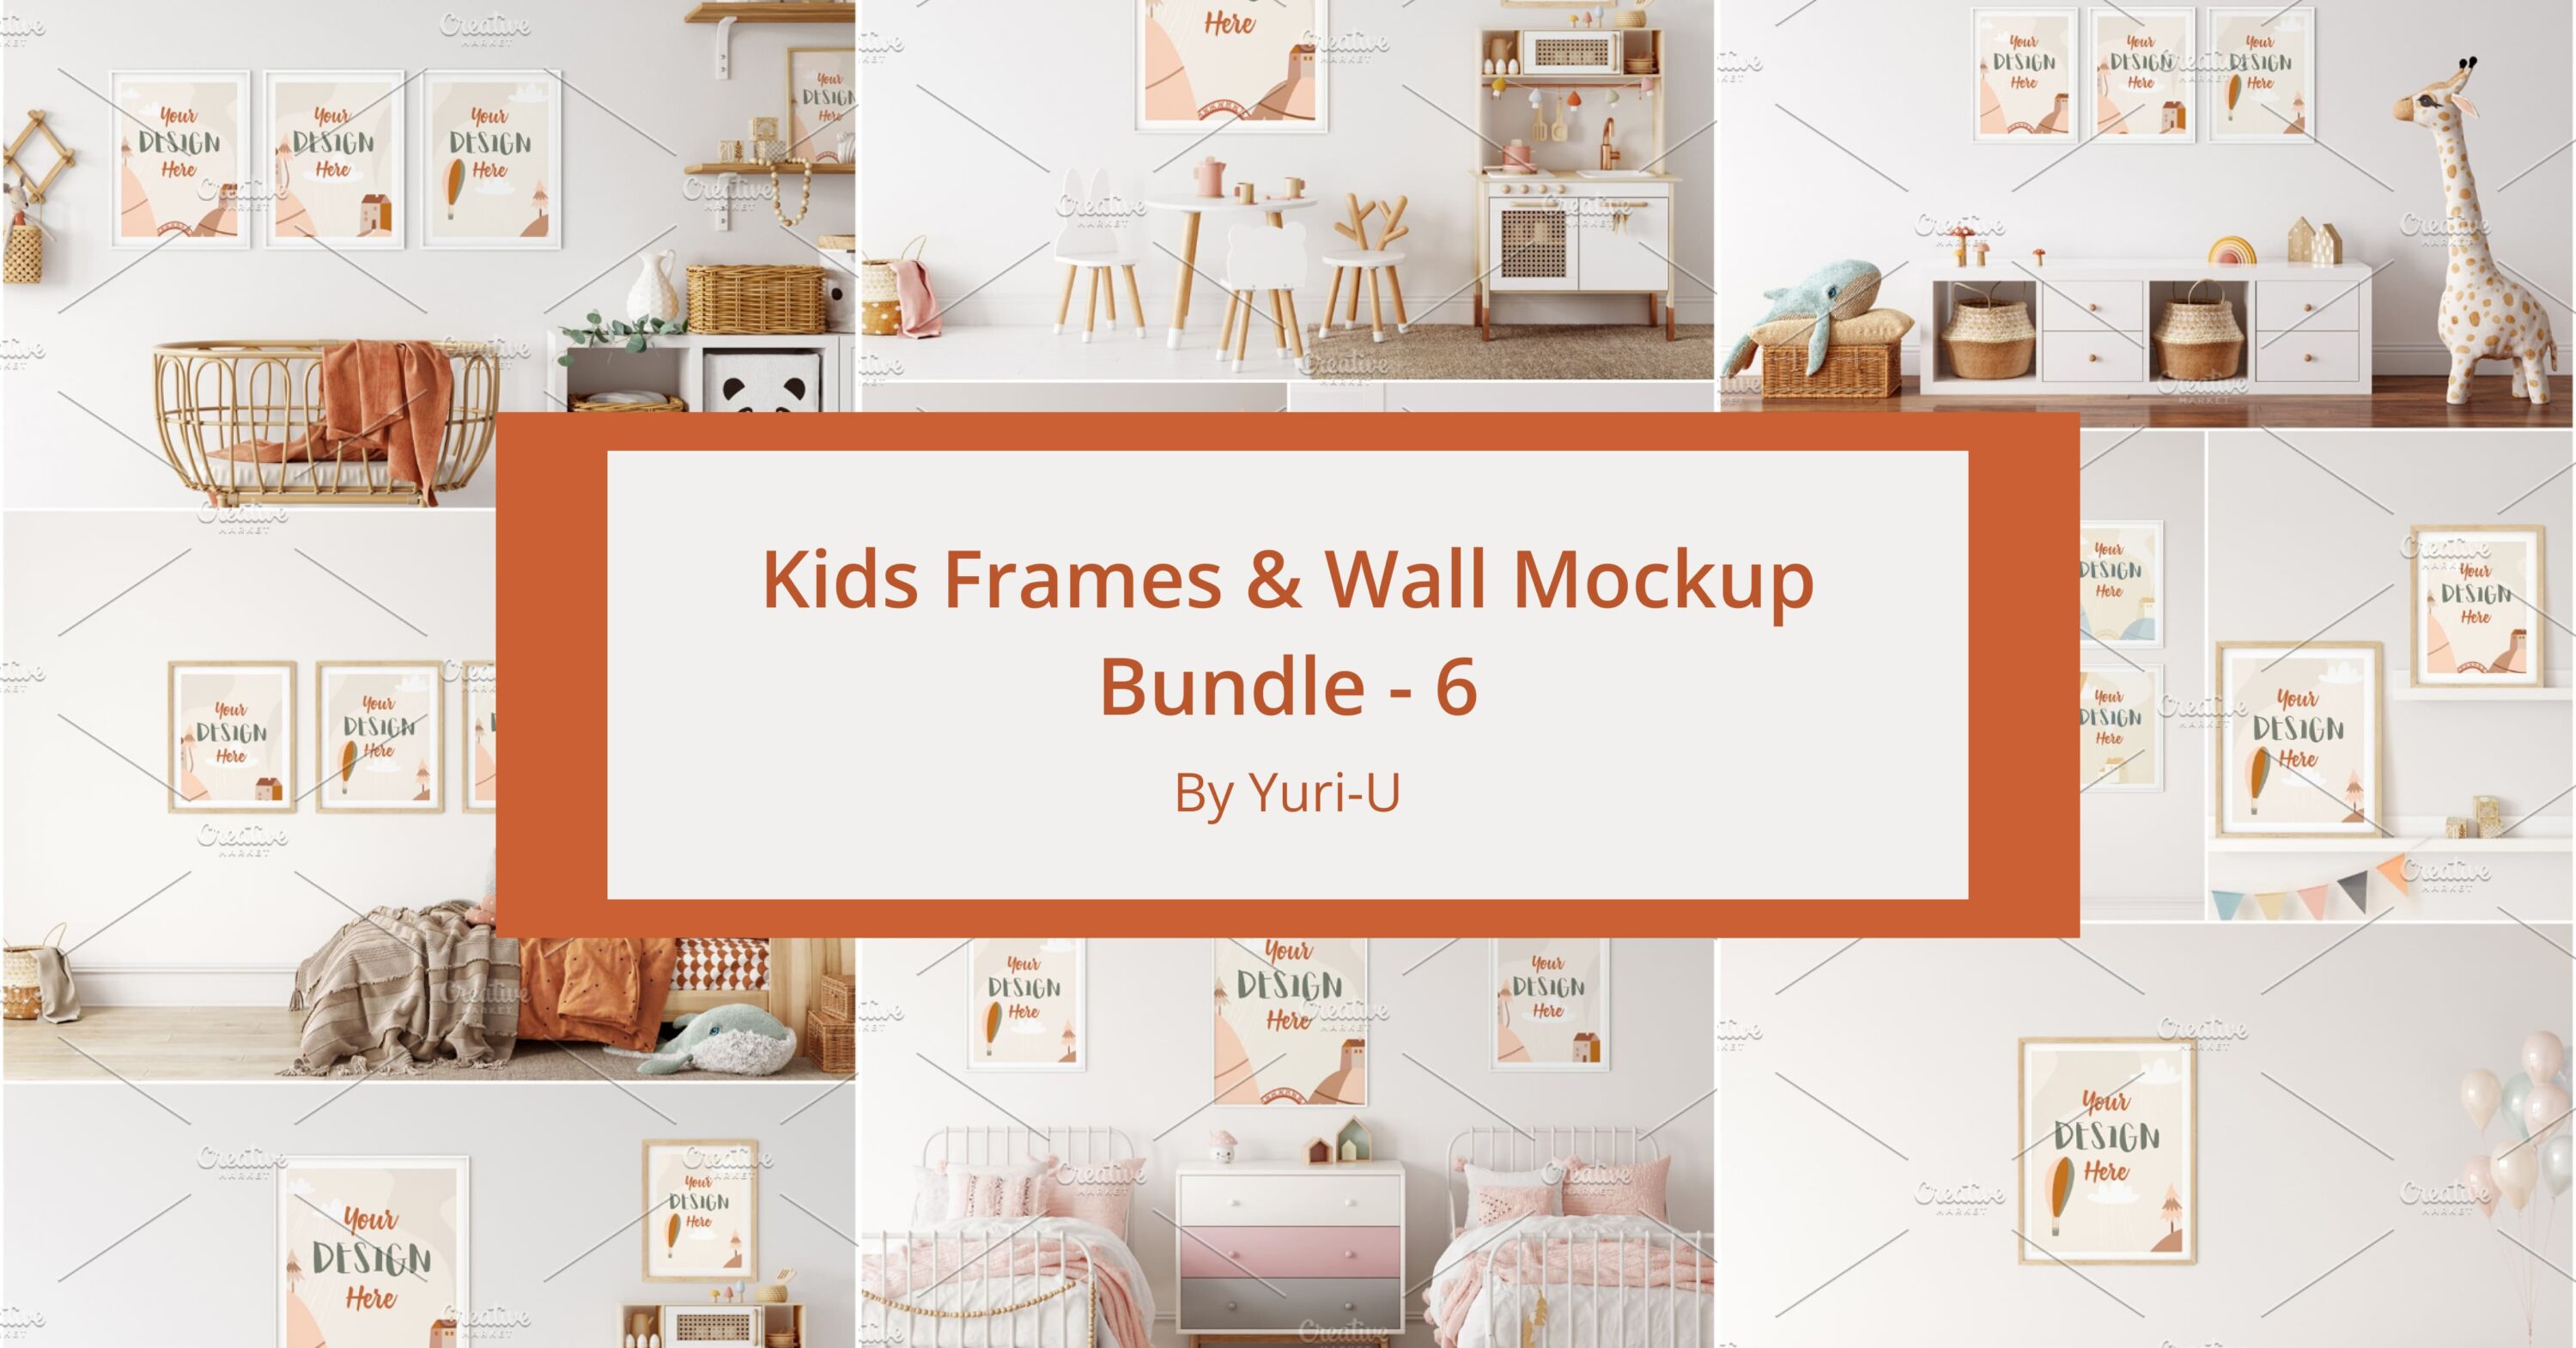 Kids Frames & Wall Mockup Bundle - 6 facebook image.